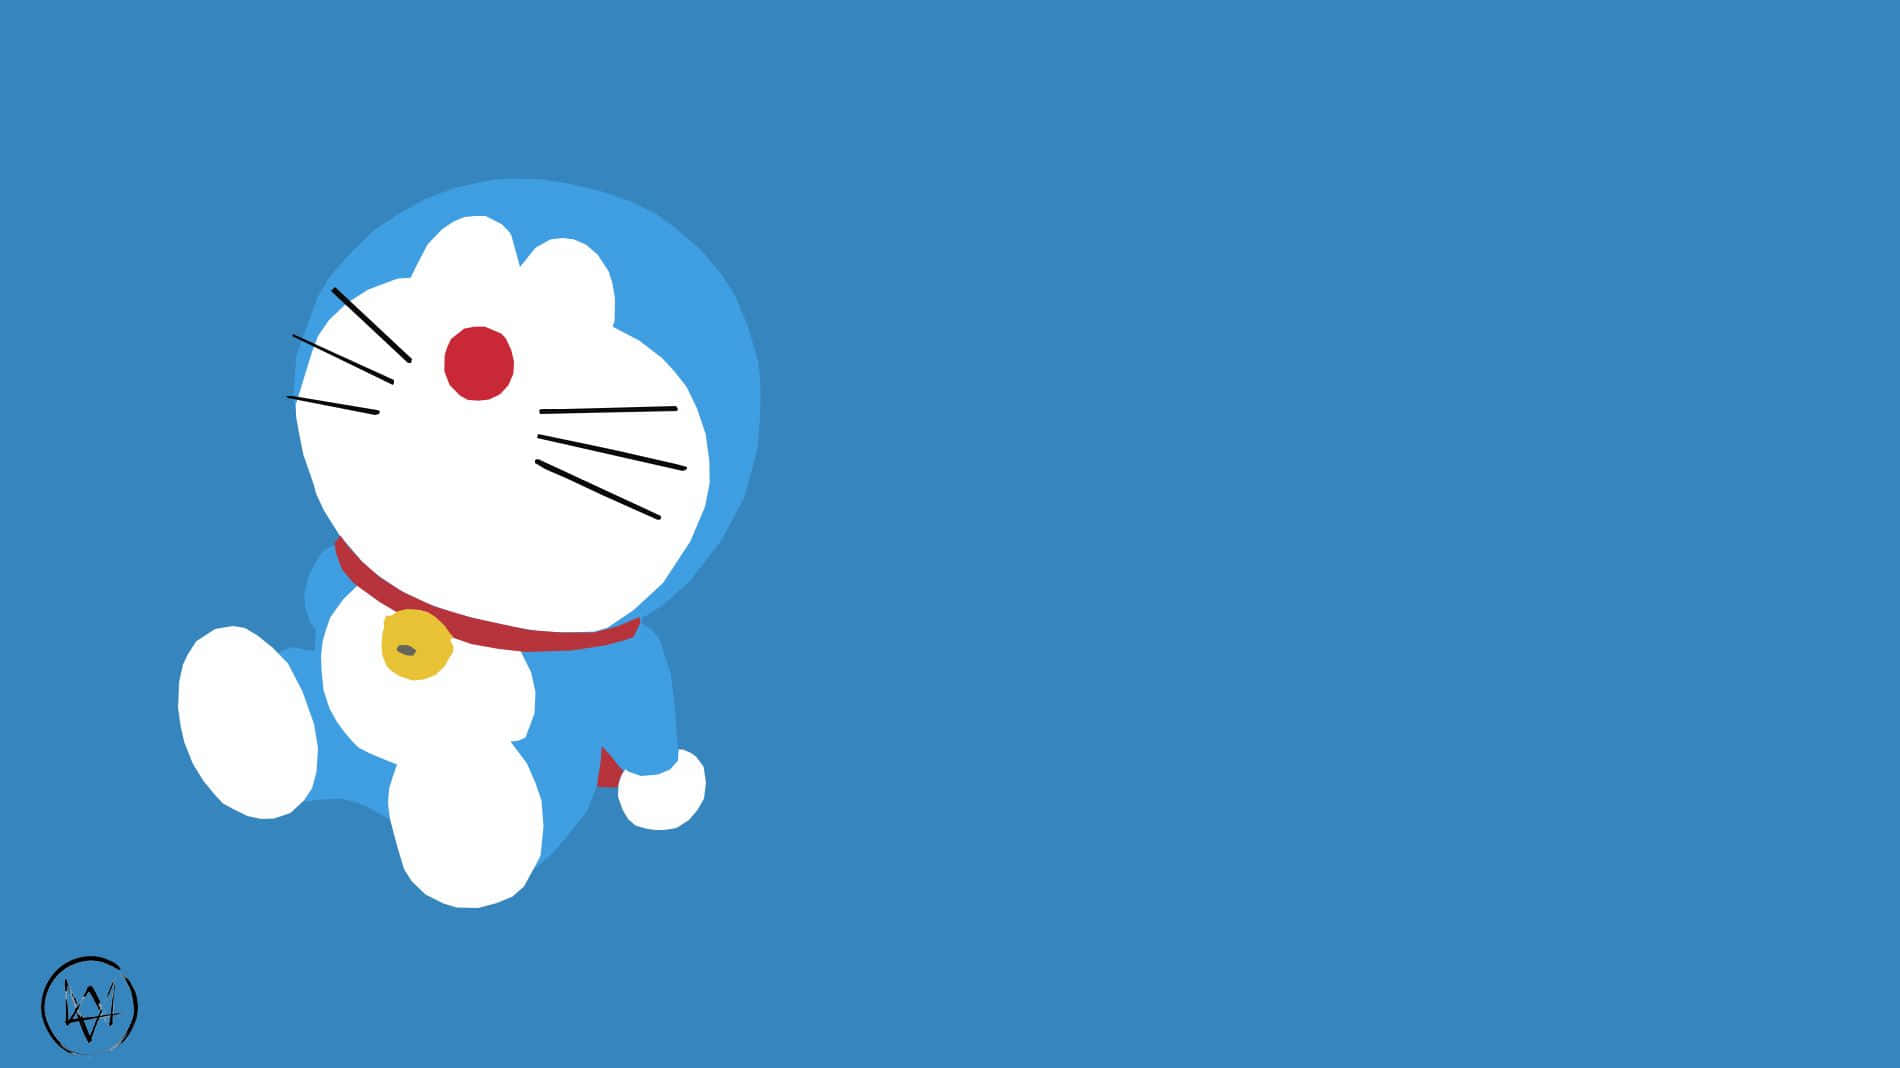 Doraemonhintergrund